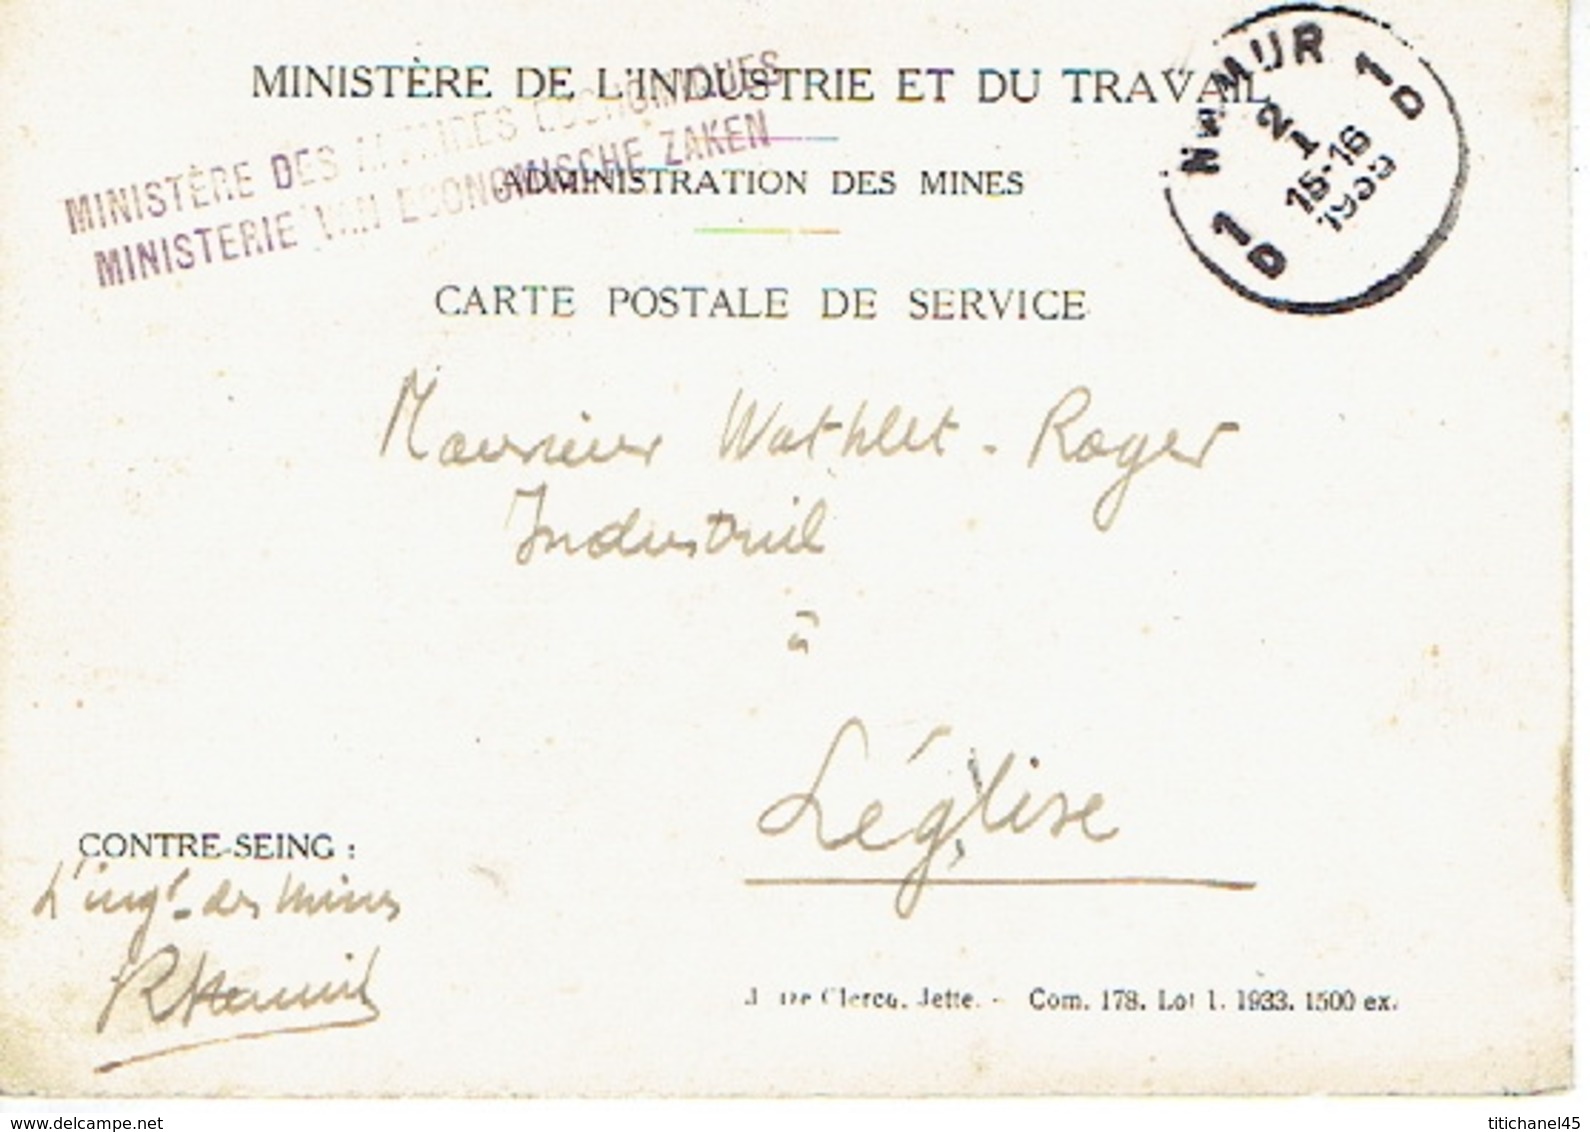 1935 Carte De Service - MINISTERE DE L'INDUSTRIE ET DU TRAVAIL - ADMINISTRATION DES MINES à NAMUR 2 Vers LEGLISE - Zonder Portkosten